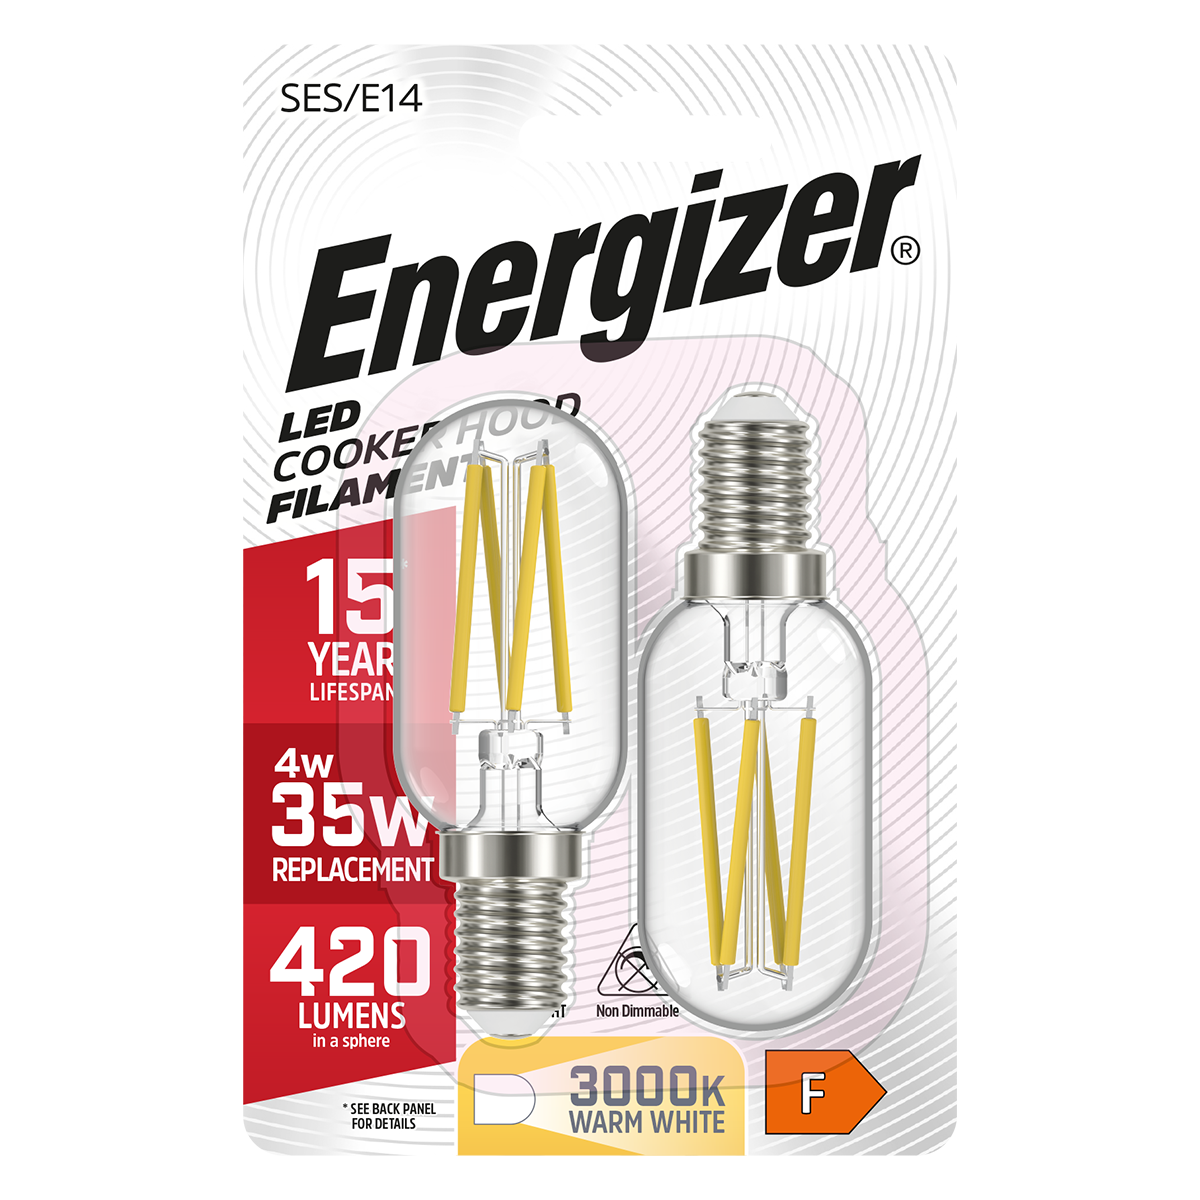 Campana extractora Energizer LED Filamento E14 (SES) 420 Lúmenes 4W 2.700K (Blanco Cálido), Blister de 2